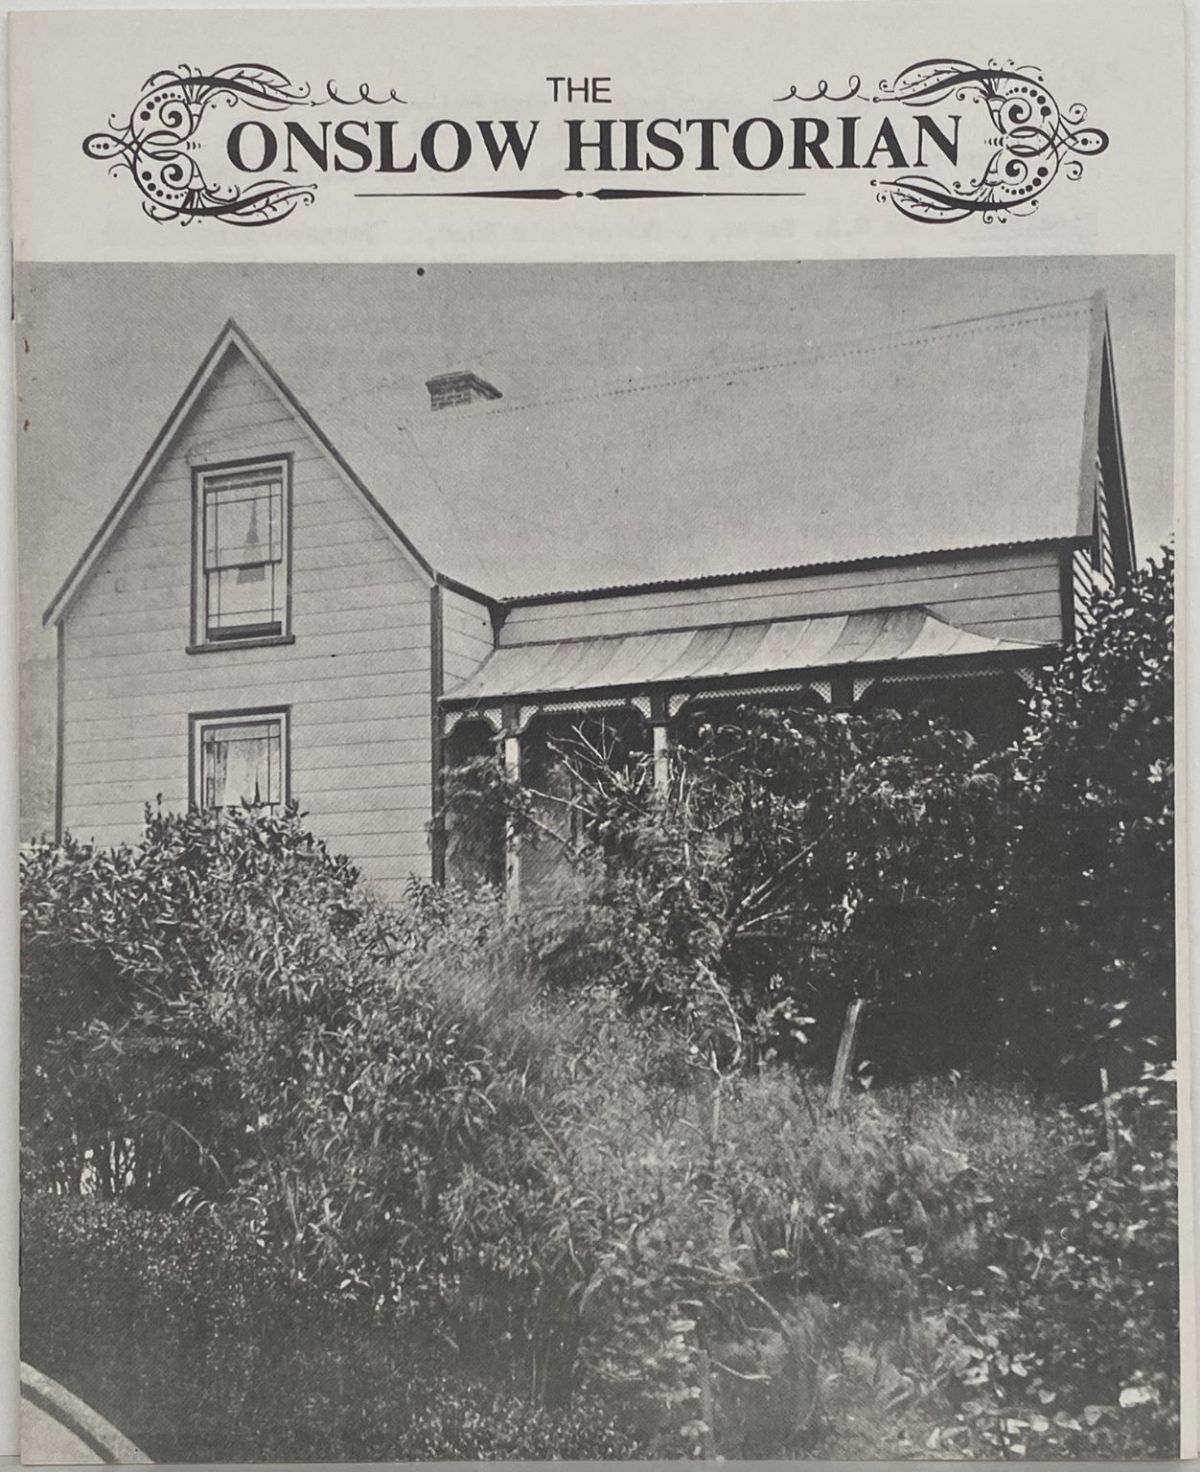 THE ONSLOW HISTORIAN: Vol. 1 - No. 4, 1971